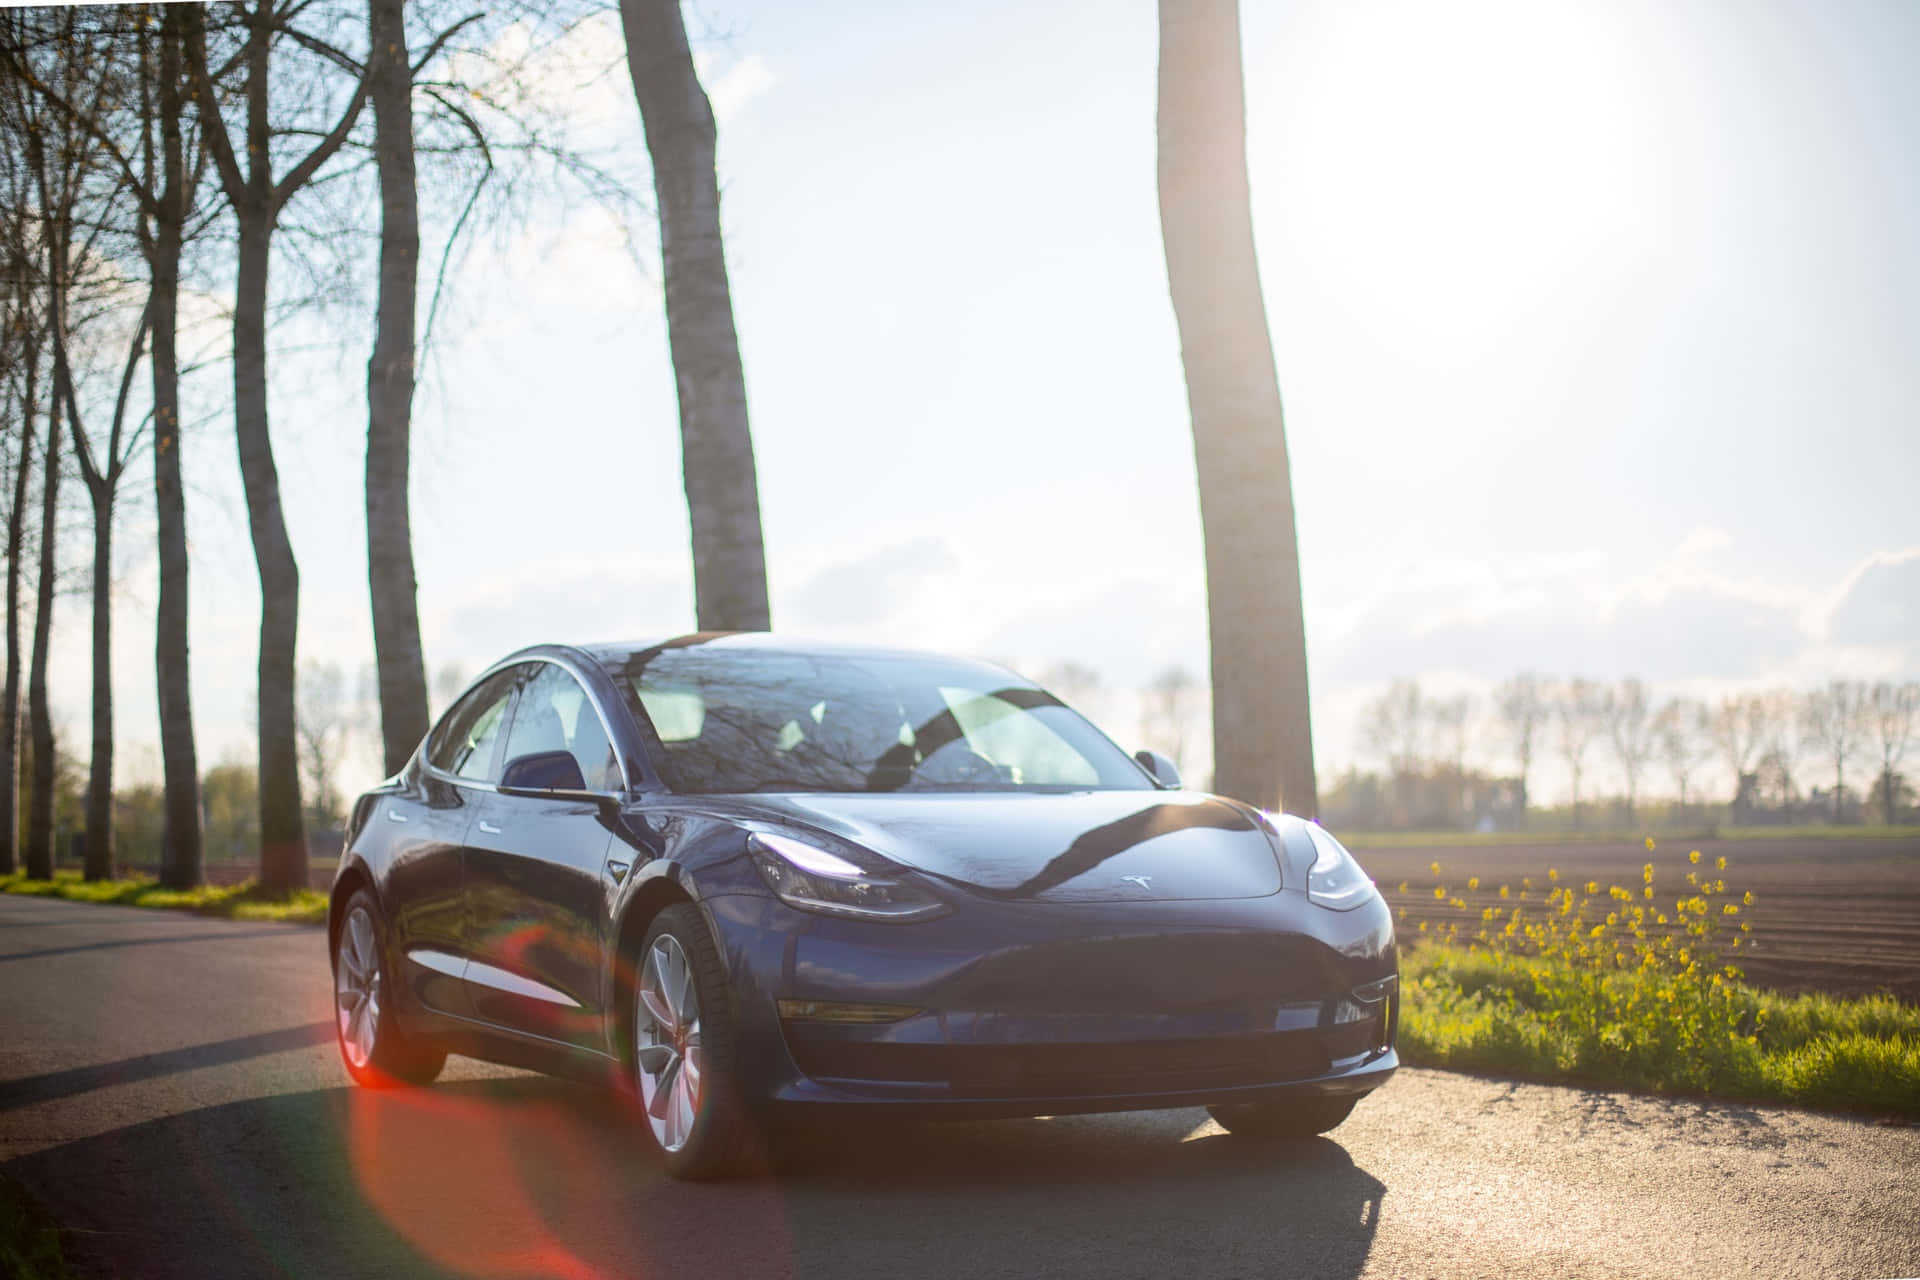 Teslashochmoderne Technologie, Entwickelt Um Saubere Energie Für Jeden Zugänglich Zu Machen.